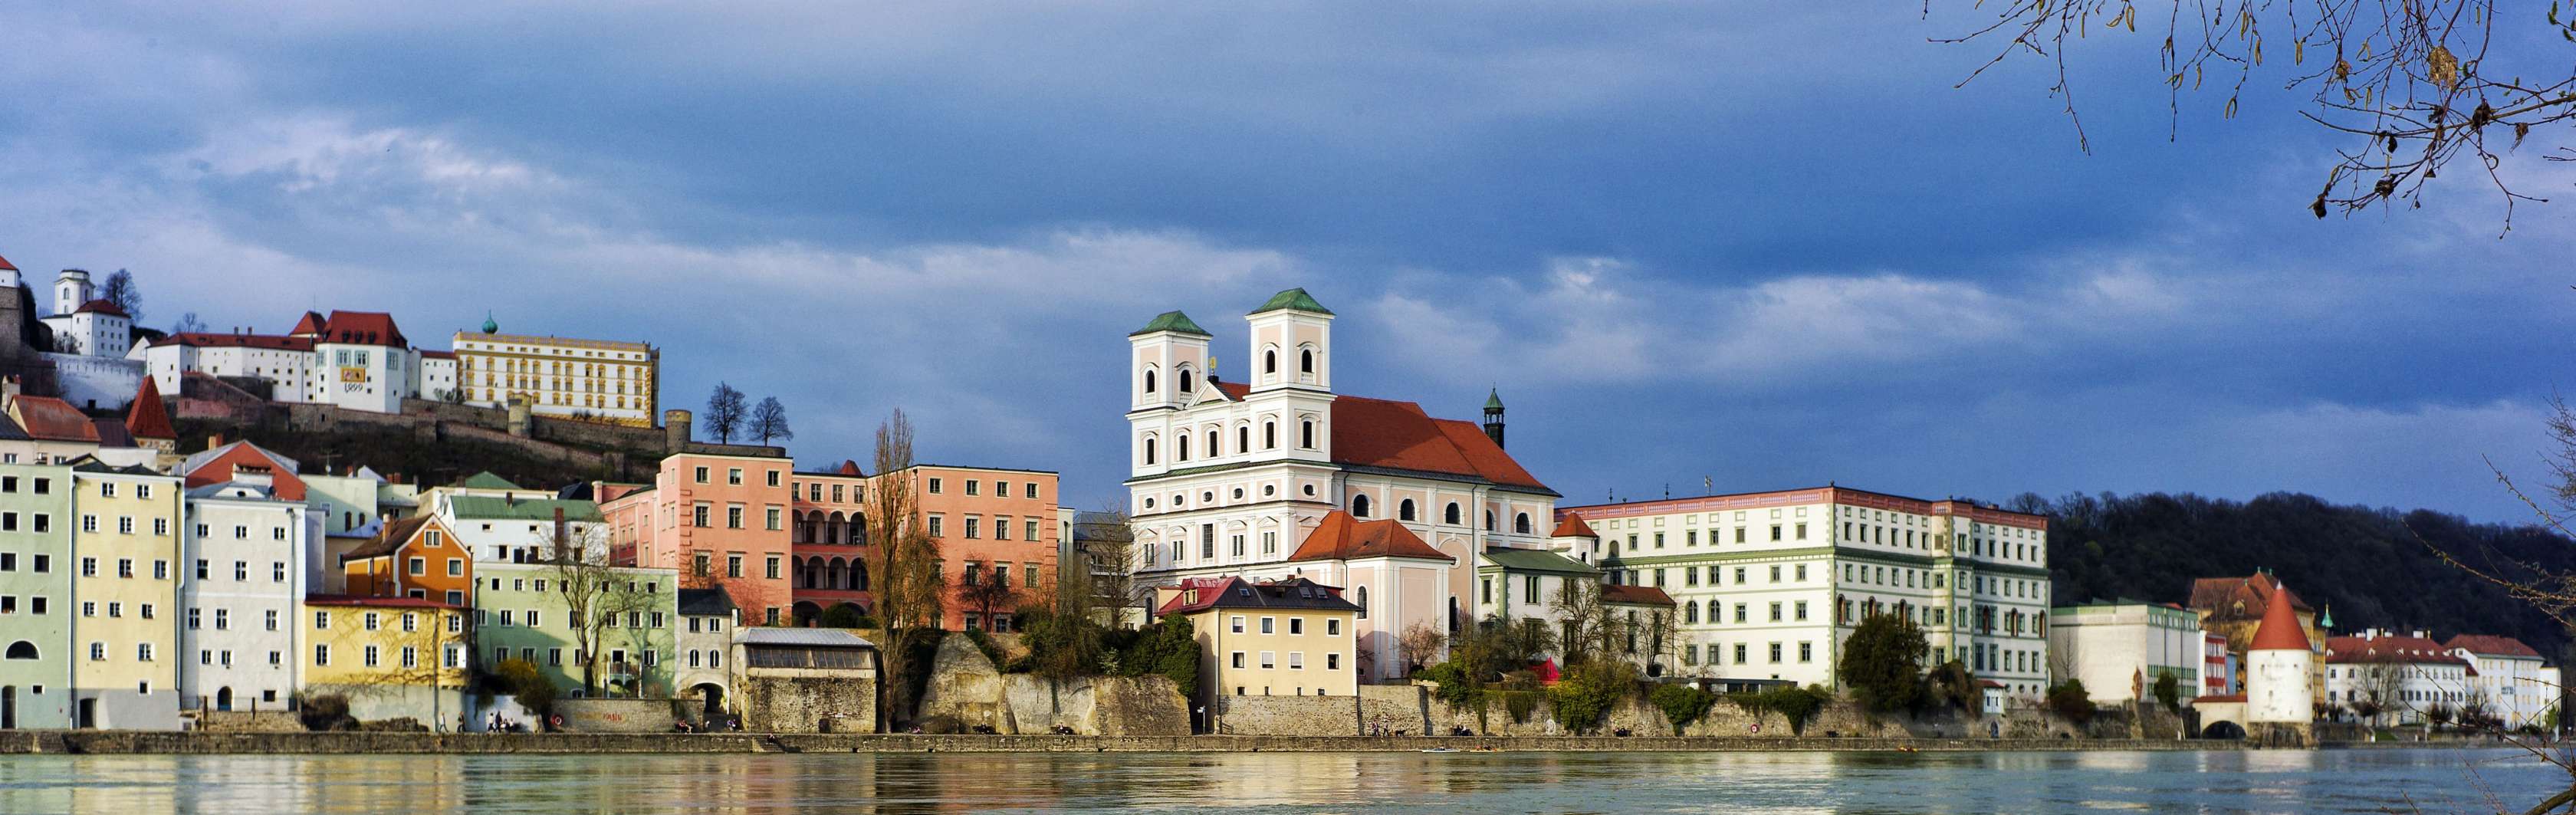 Ein Blick über die Altstadt von Passau, mit St. Michael und der Donau im Vordergrund